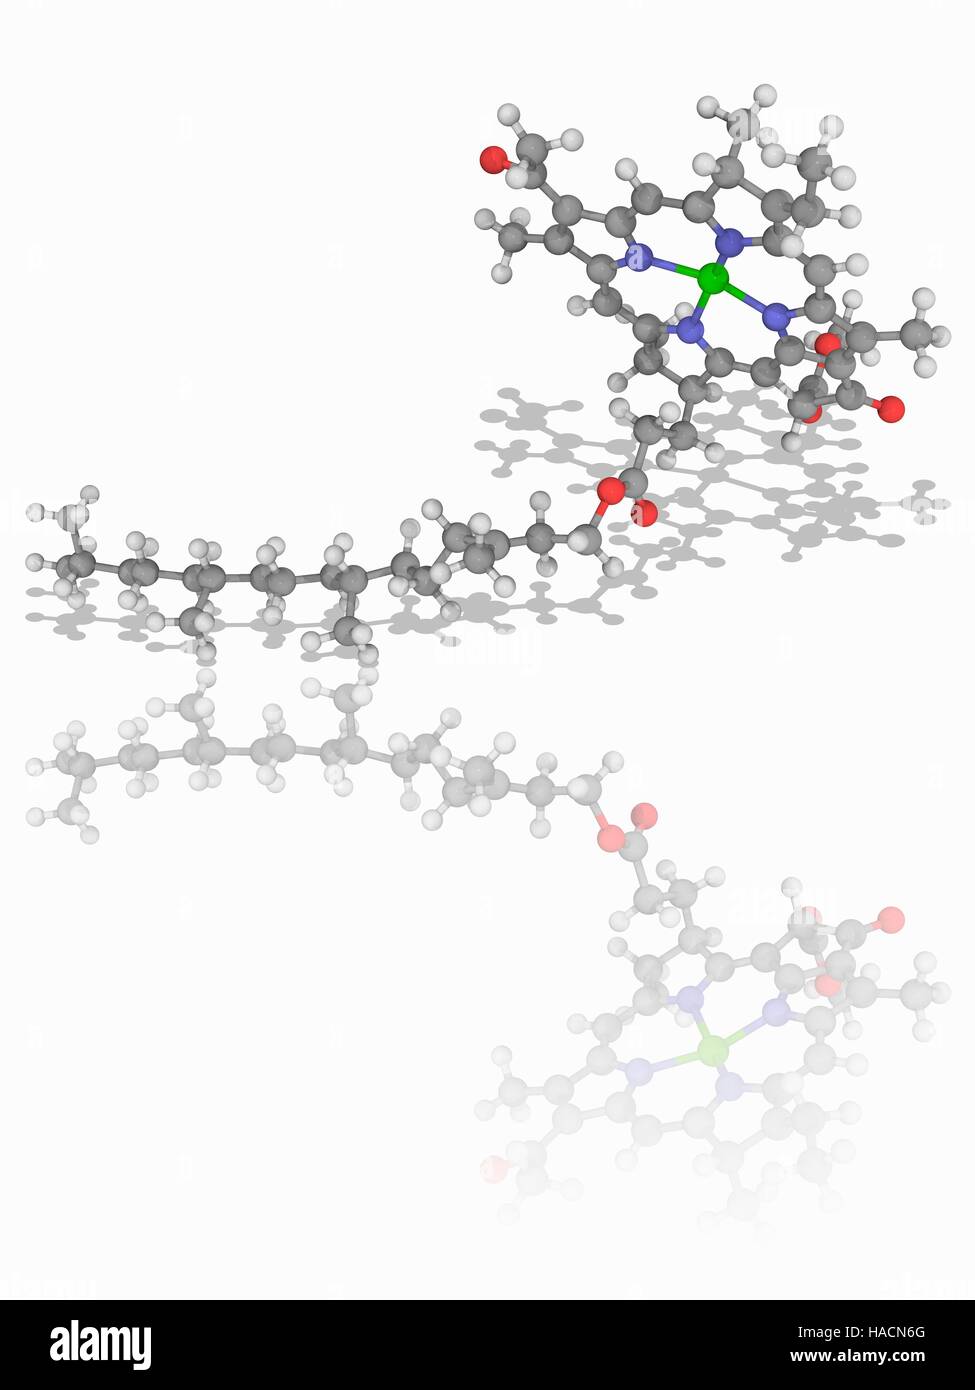 Chlorophyll B. molekulare Modell der Anlage Pigment Chlorophyll B (C55. H70. Mg.N4.O6). dieses Molekül hat eine Magnesiumion in der Mitte eines Chlorin Ring. Es spielt eine wesentliche Rolle bei der Photosynthese in Pflanzen. Atome als Kugeln dargestellt werden und sind farblich gekennzeichnet: Kohlenstoff (grau), Wasserstoff (weiß), Stickstoff (blau), Sauerstoff (rot) und Magnesium (grün). Abbildung. Stockfoto